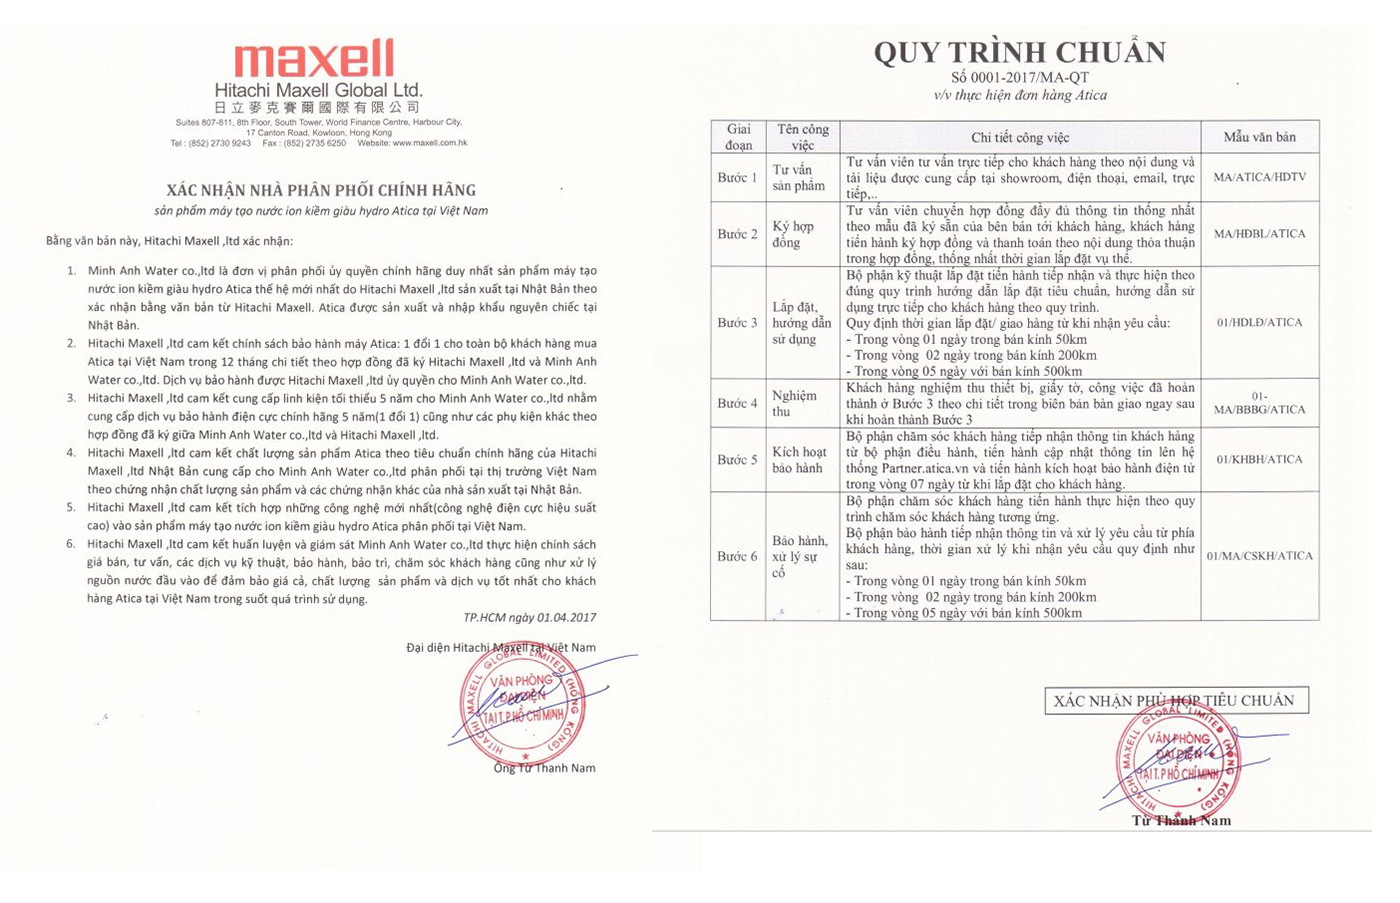 Minh Anh Water là nhà phân phối độc quyền của Maxell tại Việt Nam